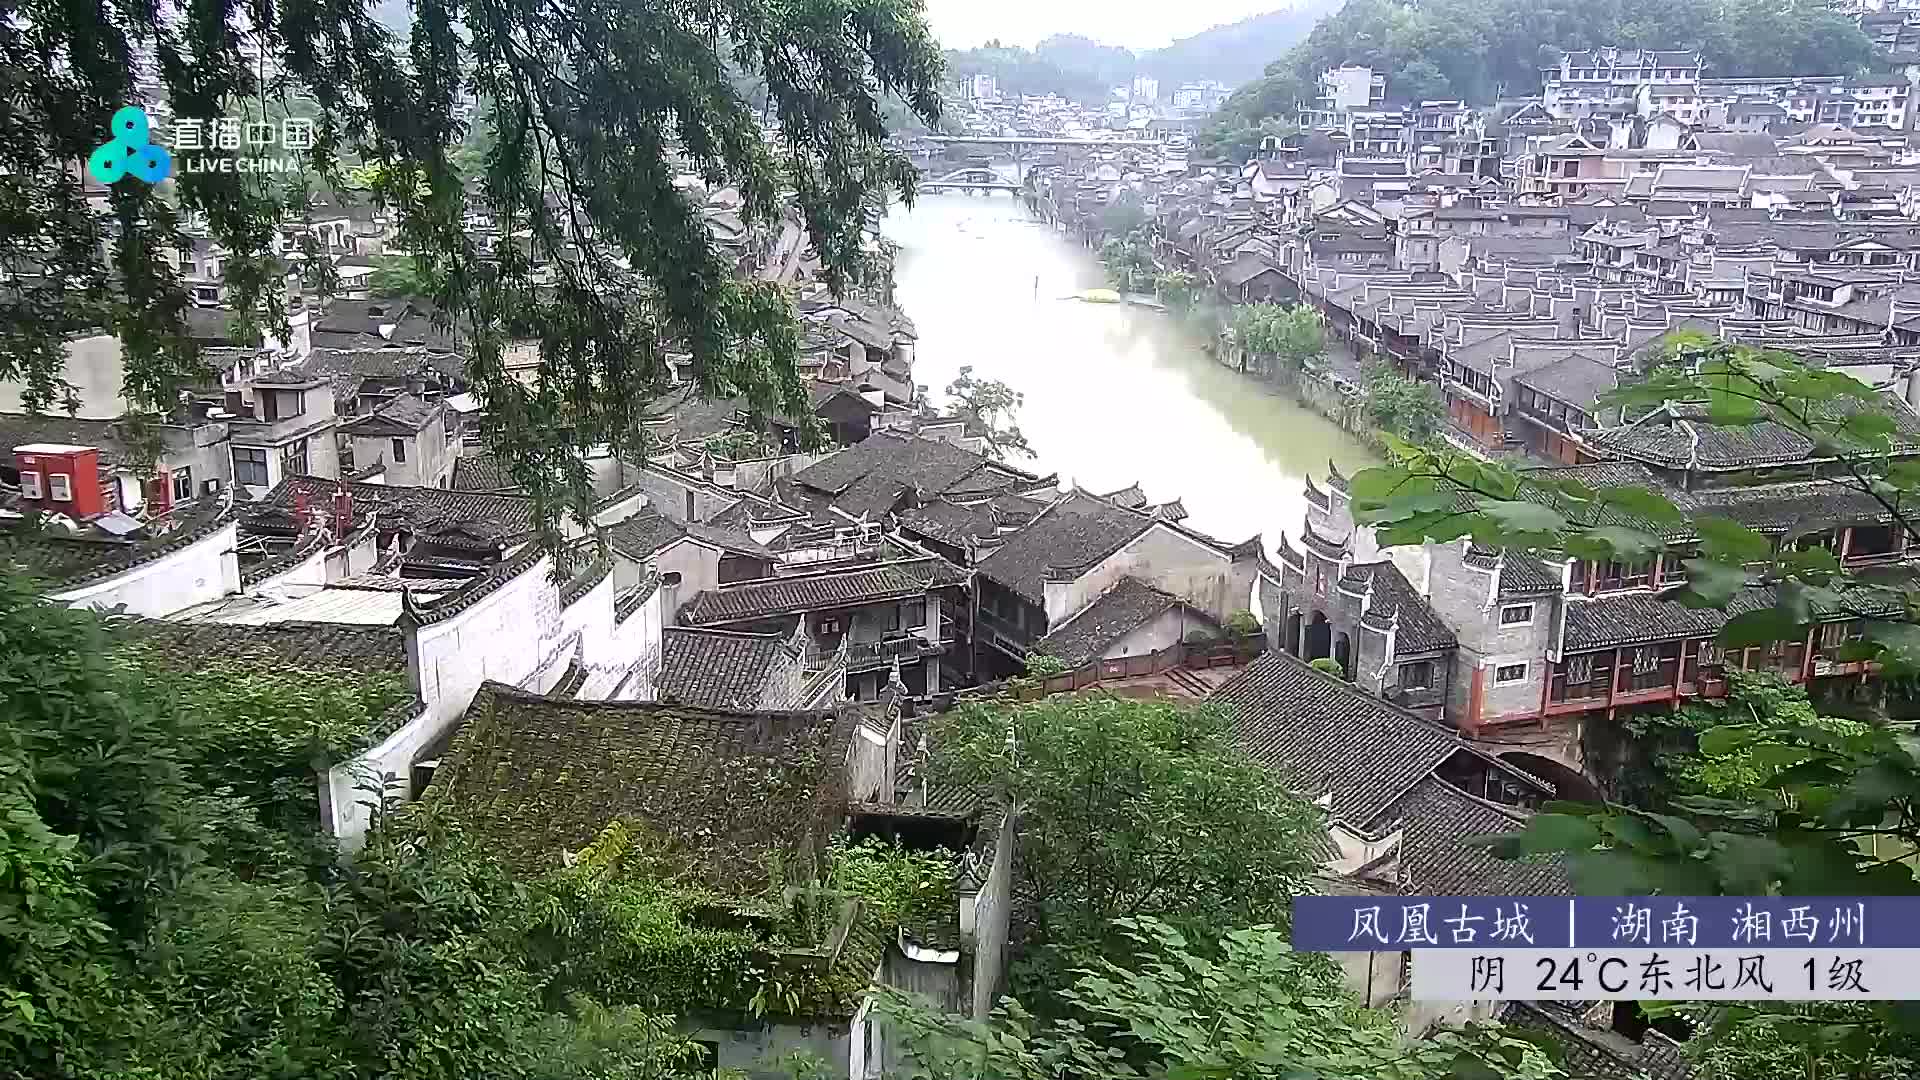 Fenghuang Di. 06:48